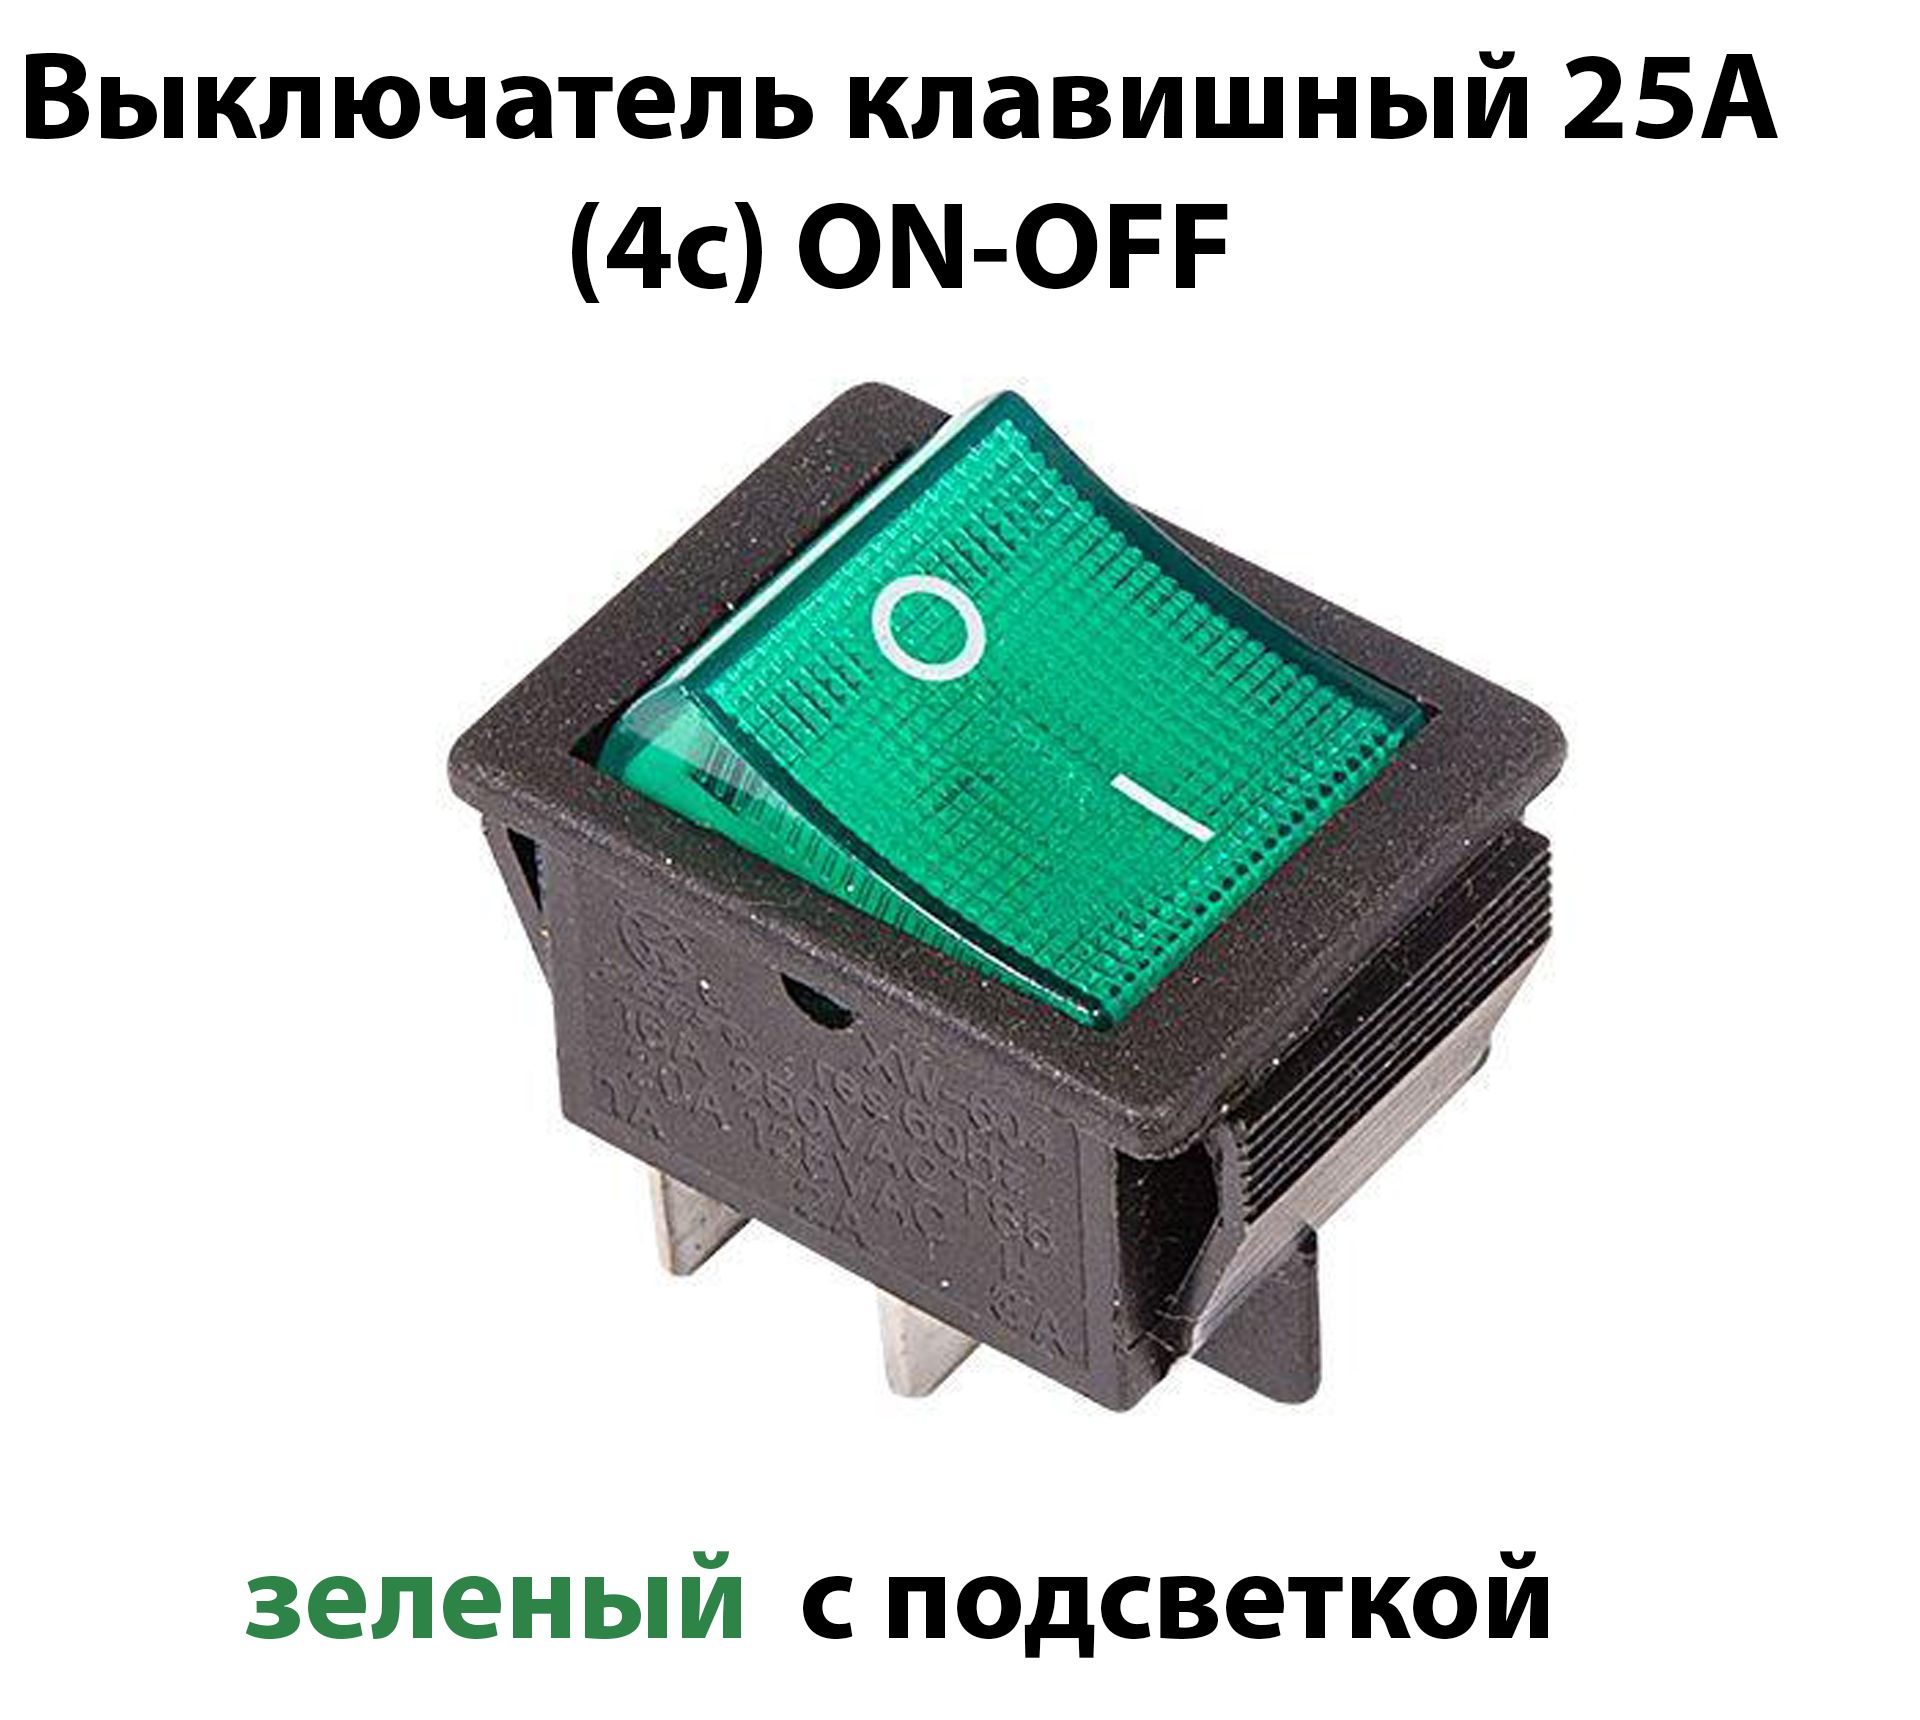 Выключательклавишныйзелёныйширокий,сподсветкойдляудлинителя/фильтра220В/25А4контакта(ON-OFF)(2х2),однаштука